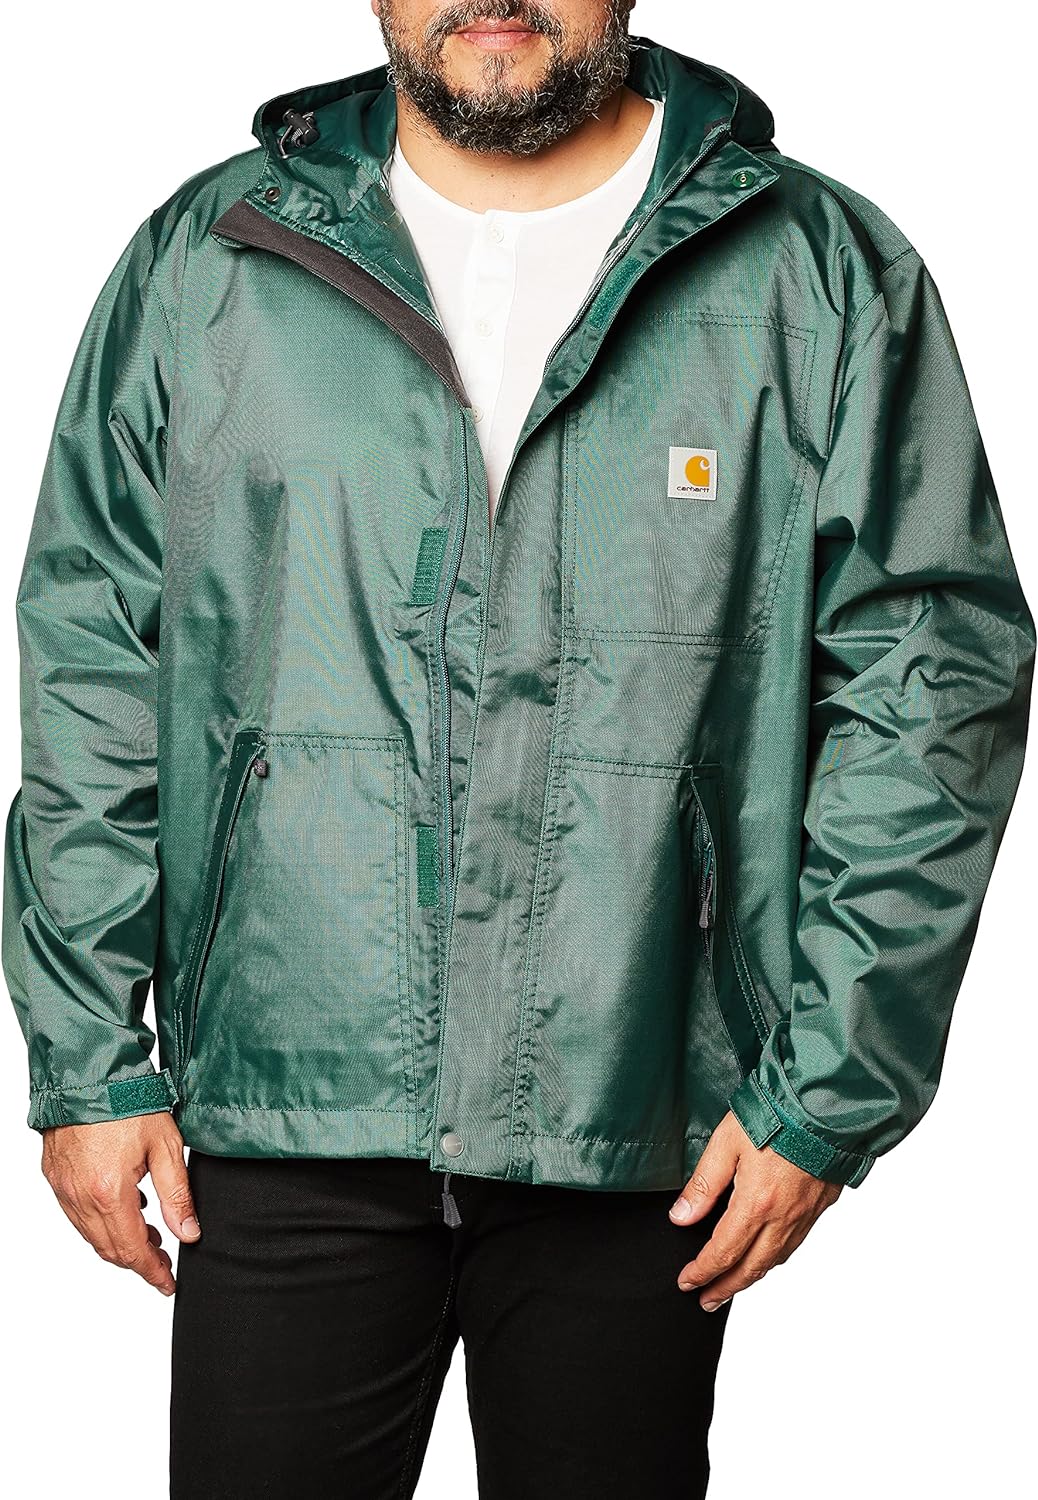 Carhartt Men's 103510 Dry Harbor Jacket | eBay